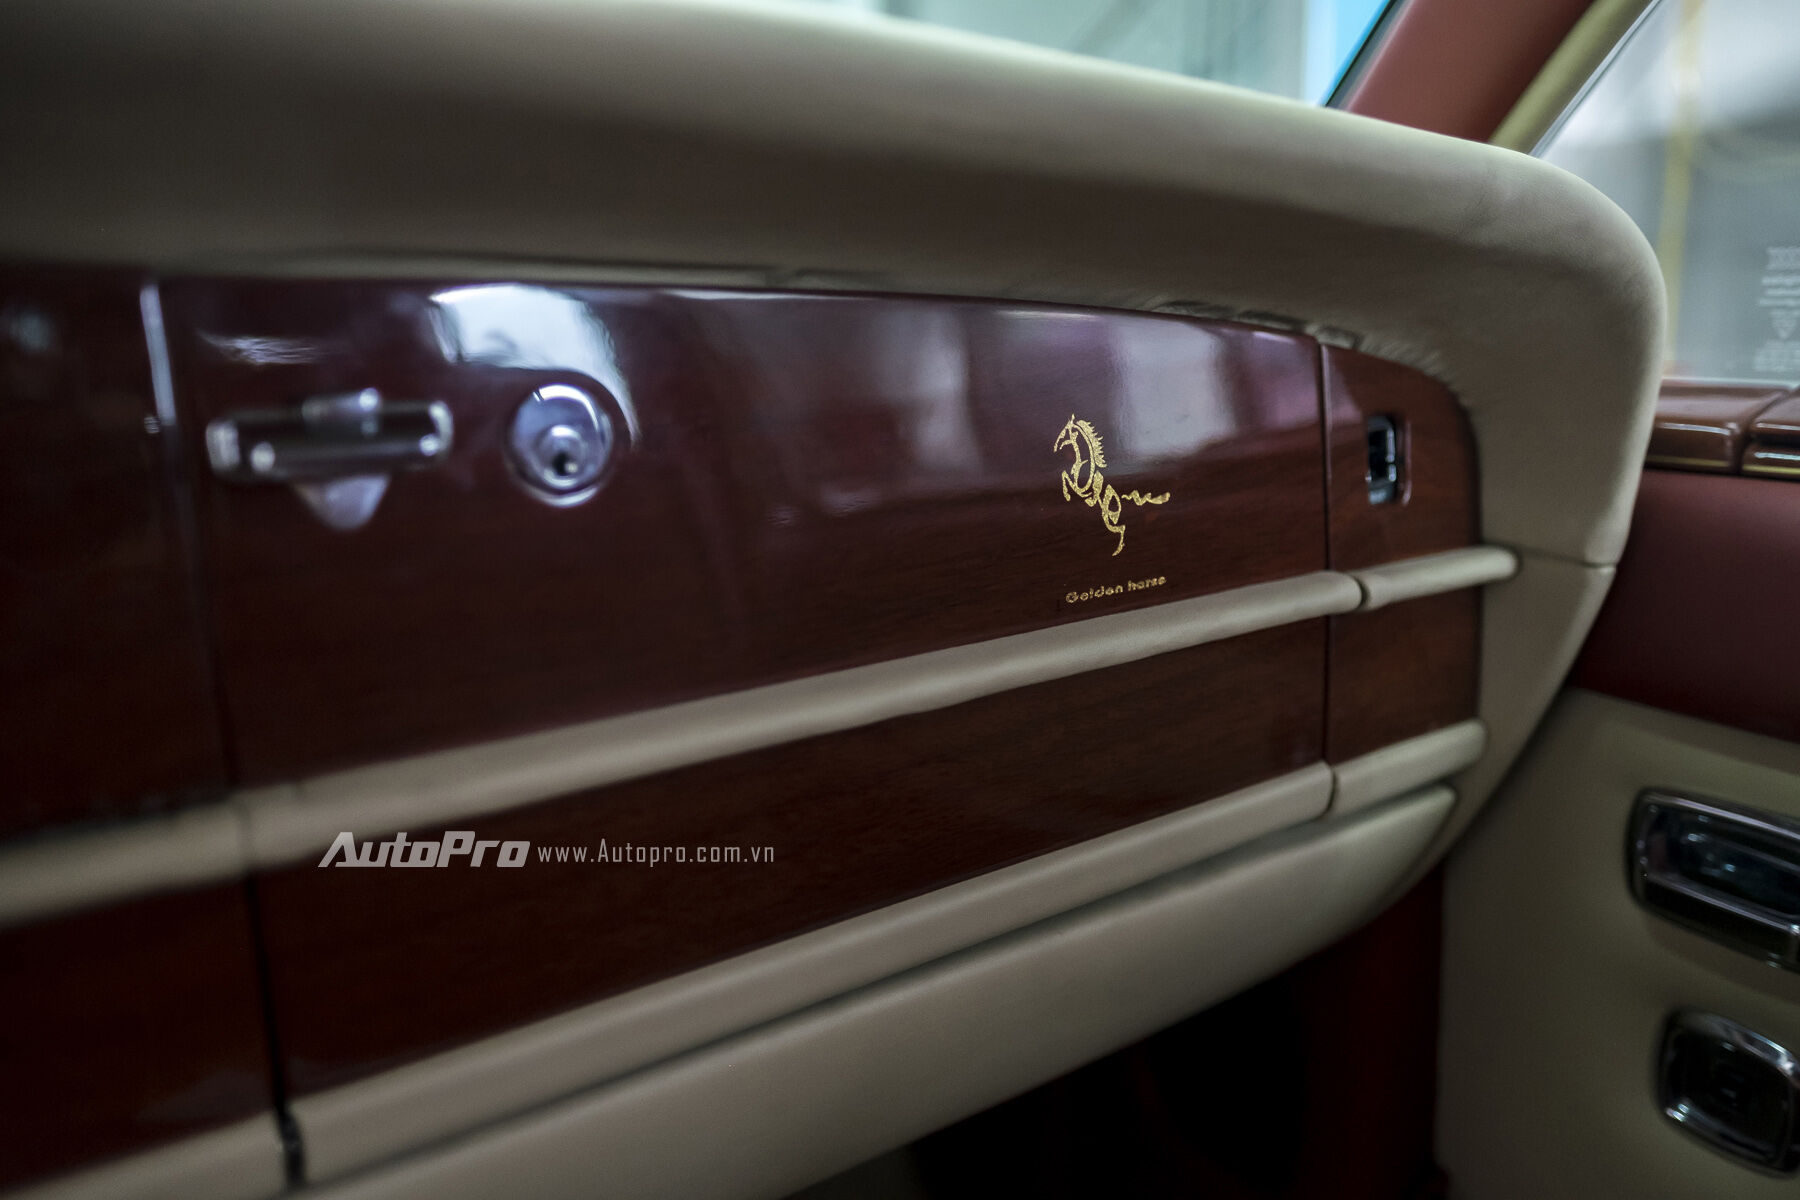  Biểu tượng con ngựa cùng cái tên Golden Horse được chủ xe ưu ái mạ vàng lên mặt táp-lô của xe tạo ra dấu ấn riêng như những chiếc Rolls-Royce được cá nhân hoá theo dạng Bespoke. 